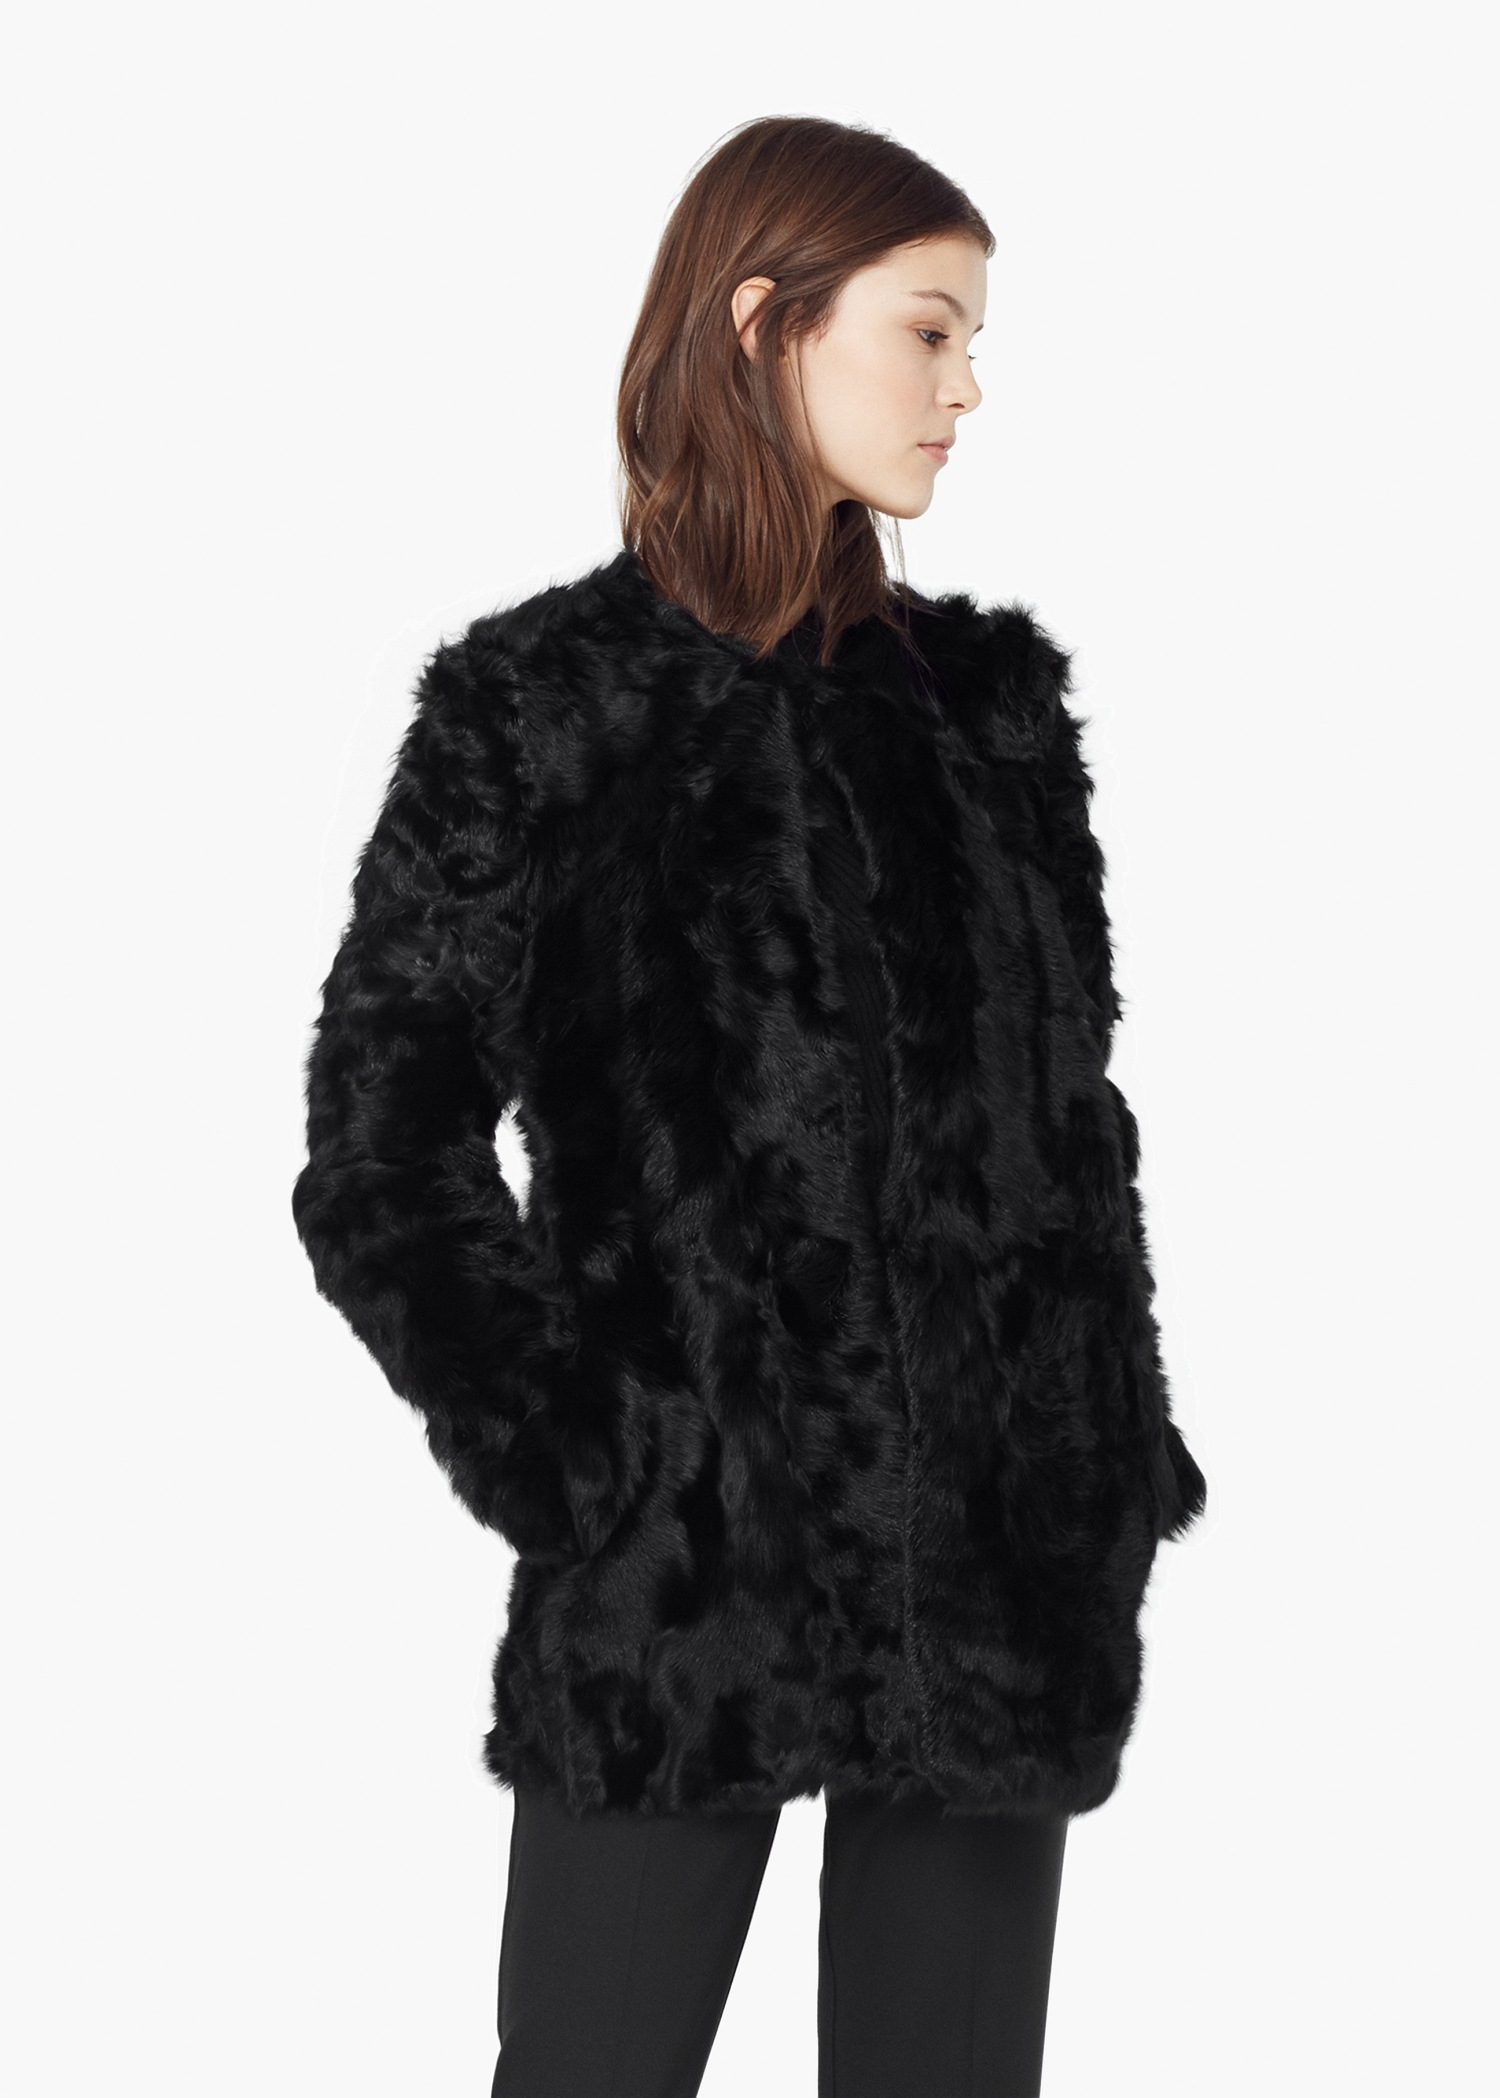 Mango Black Fur Jacket on Sale, 55% OFF | ilikepinga.com